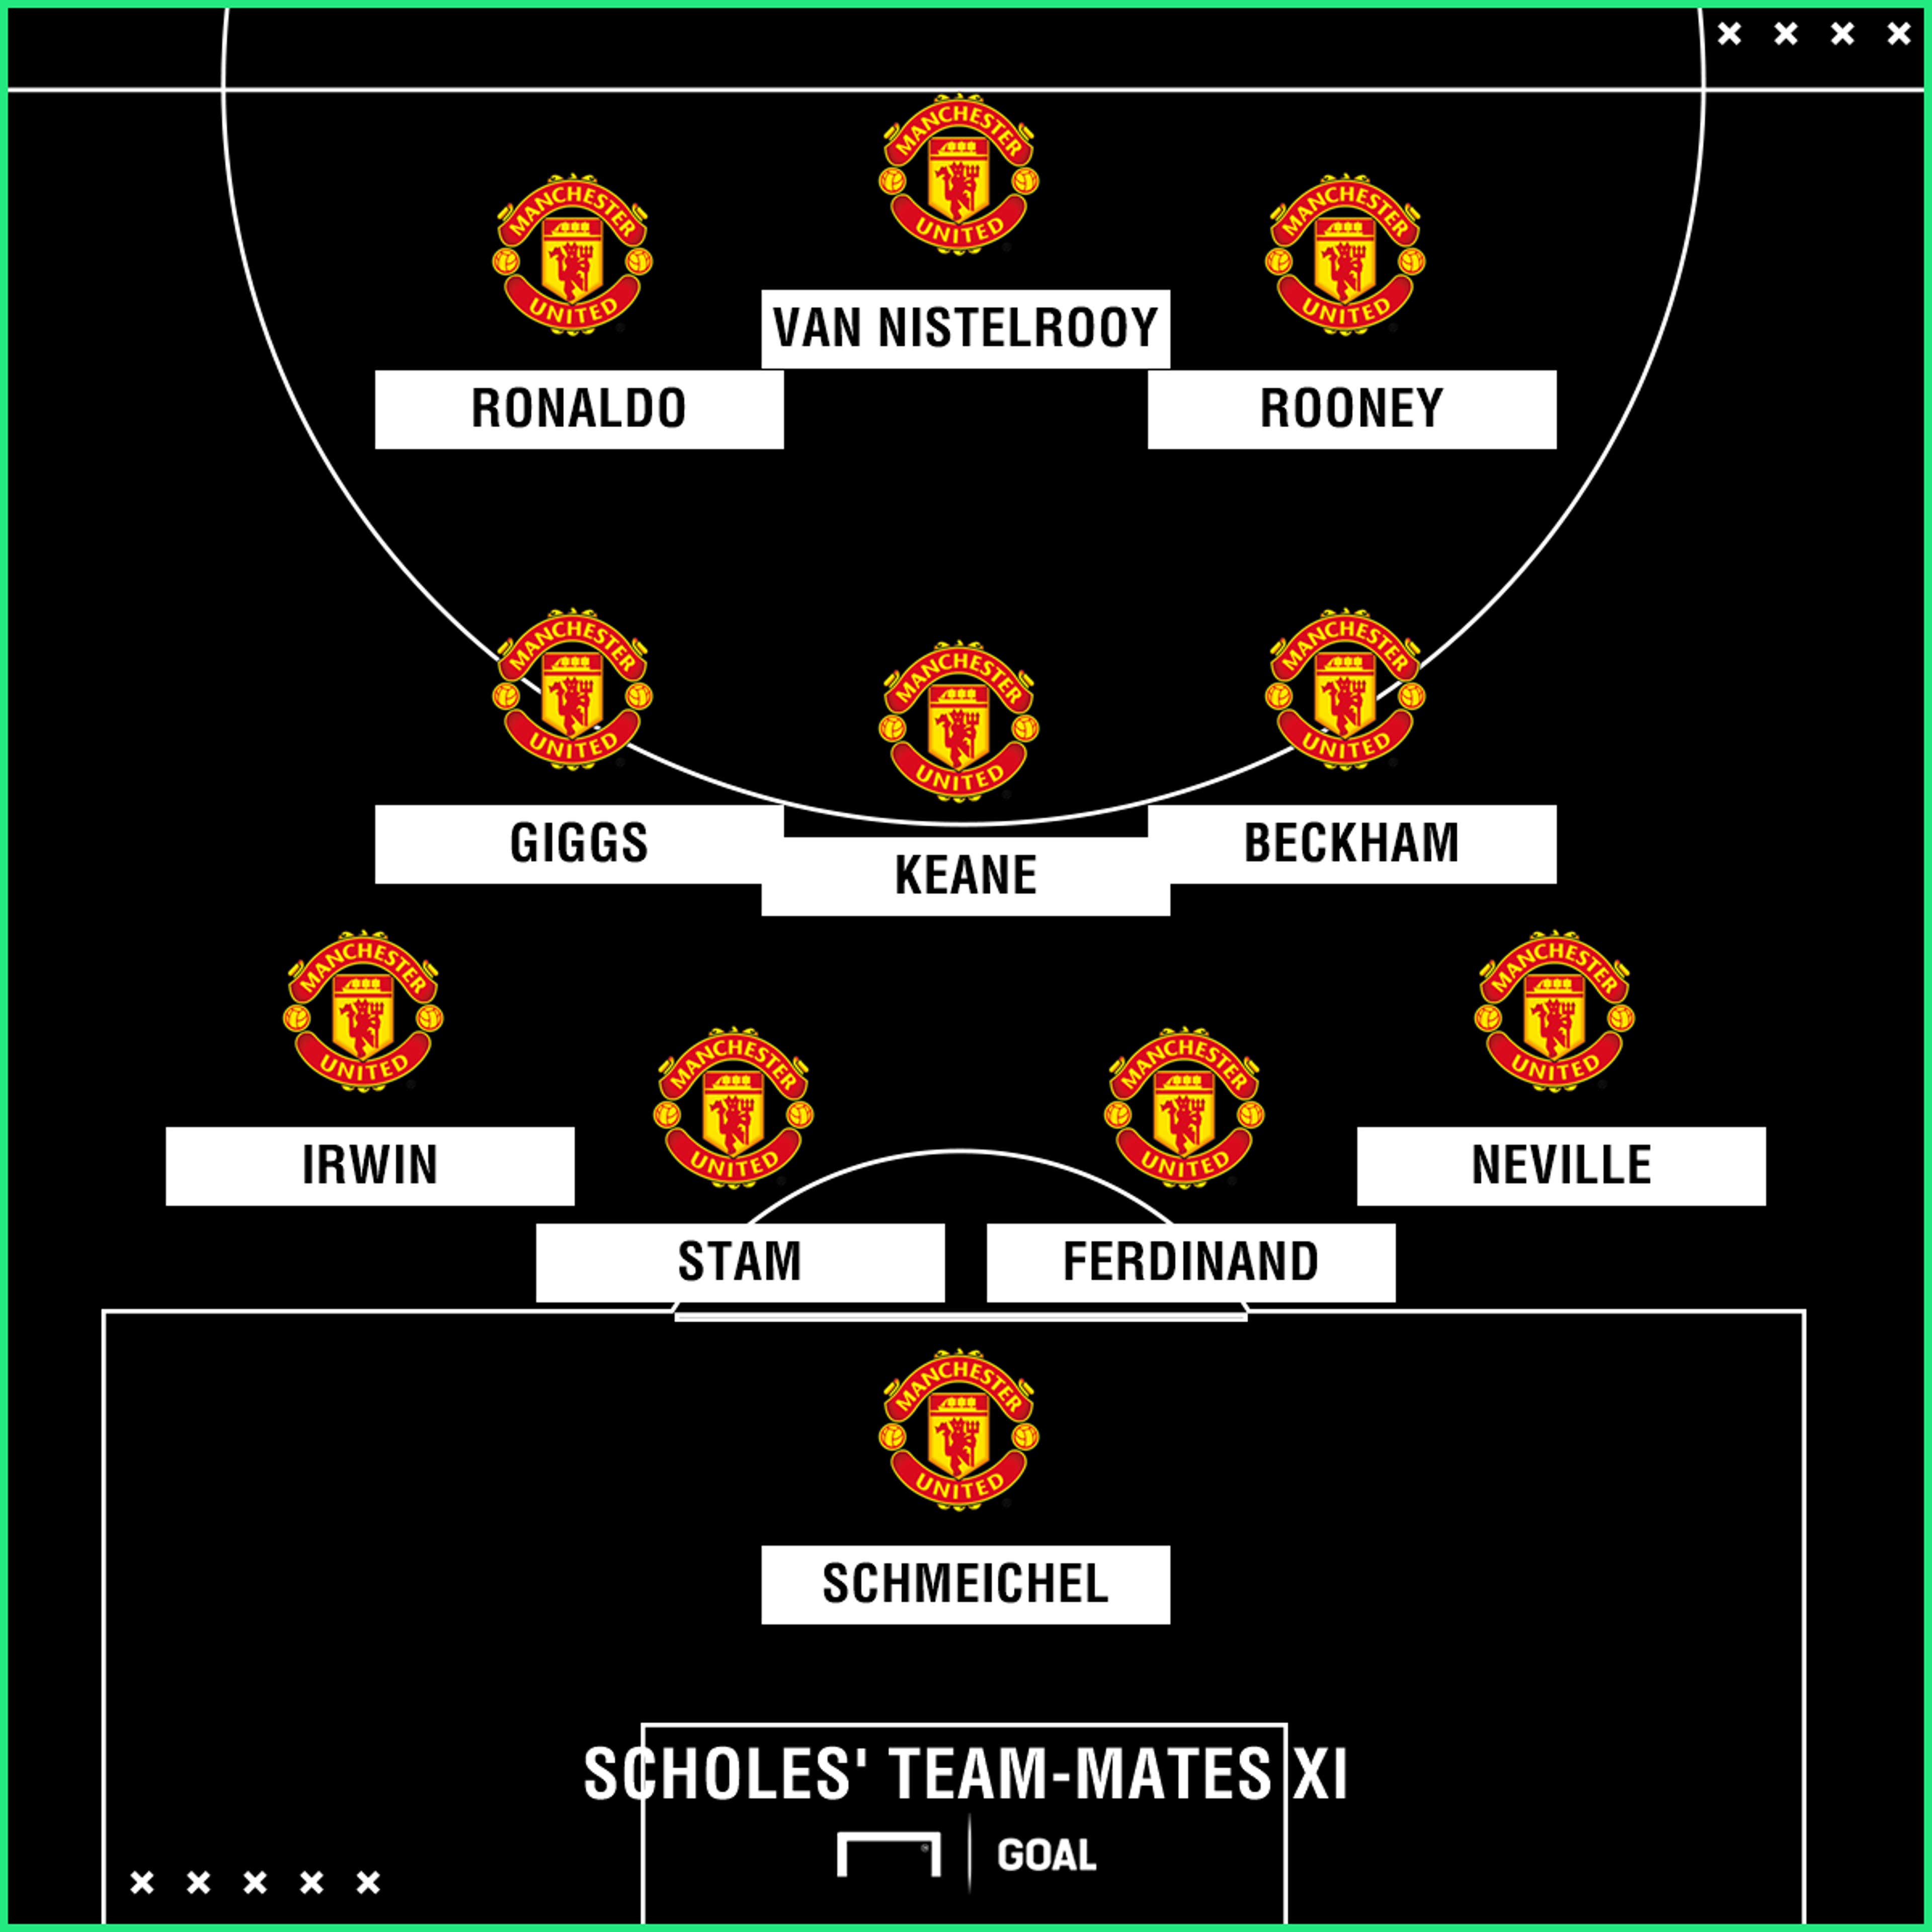 Paul Scholes Manchester United team-mates XI